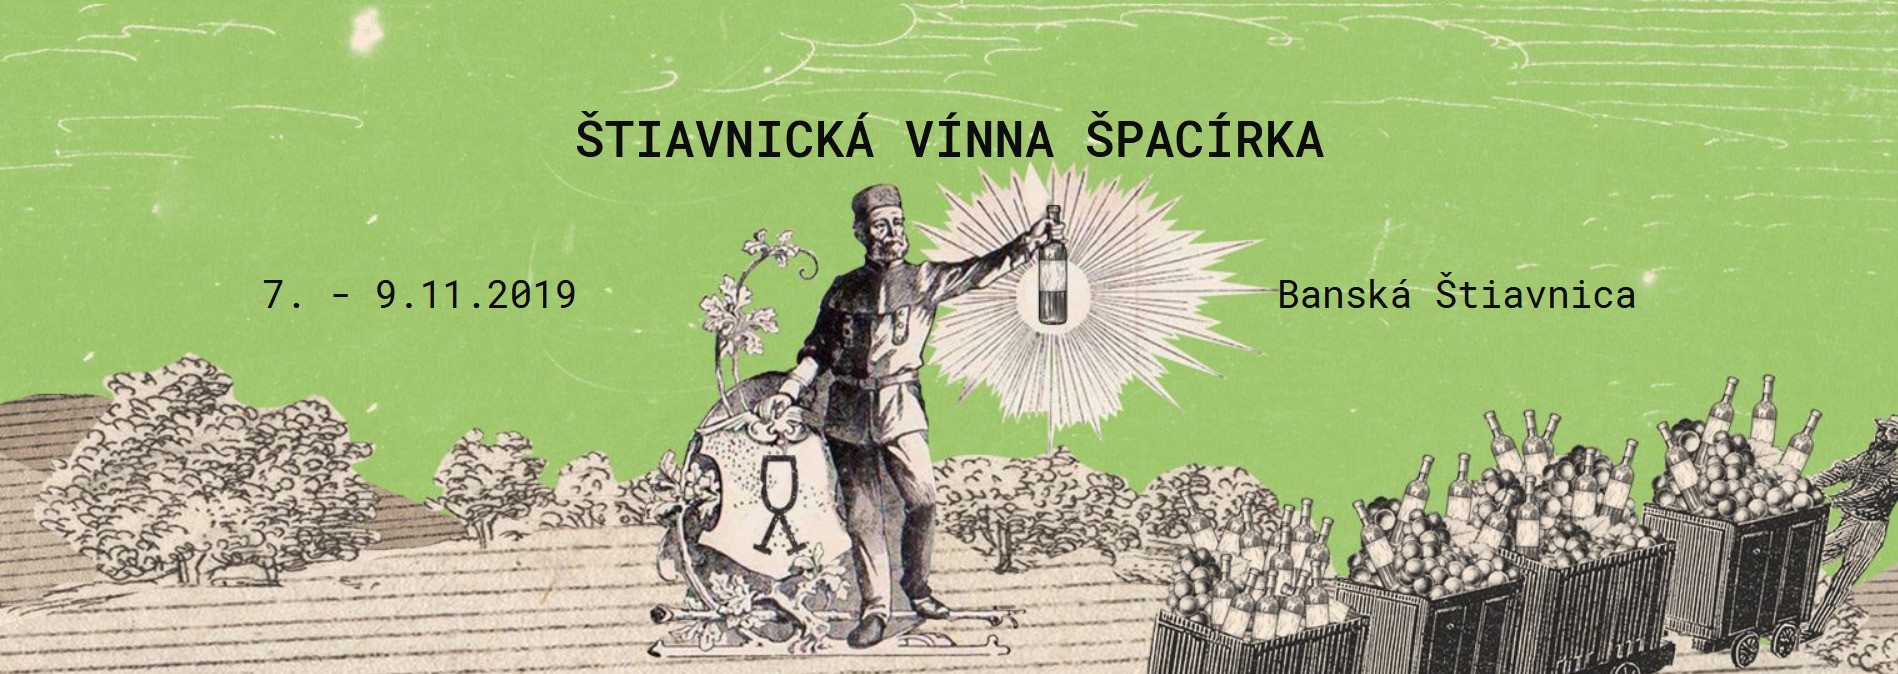 Štiavnická vínna špacírka 2019 (7. - 9.11.2019)